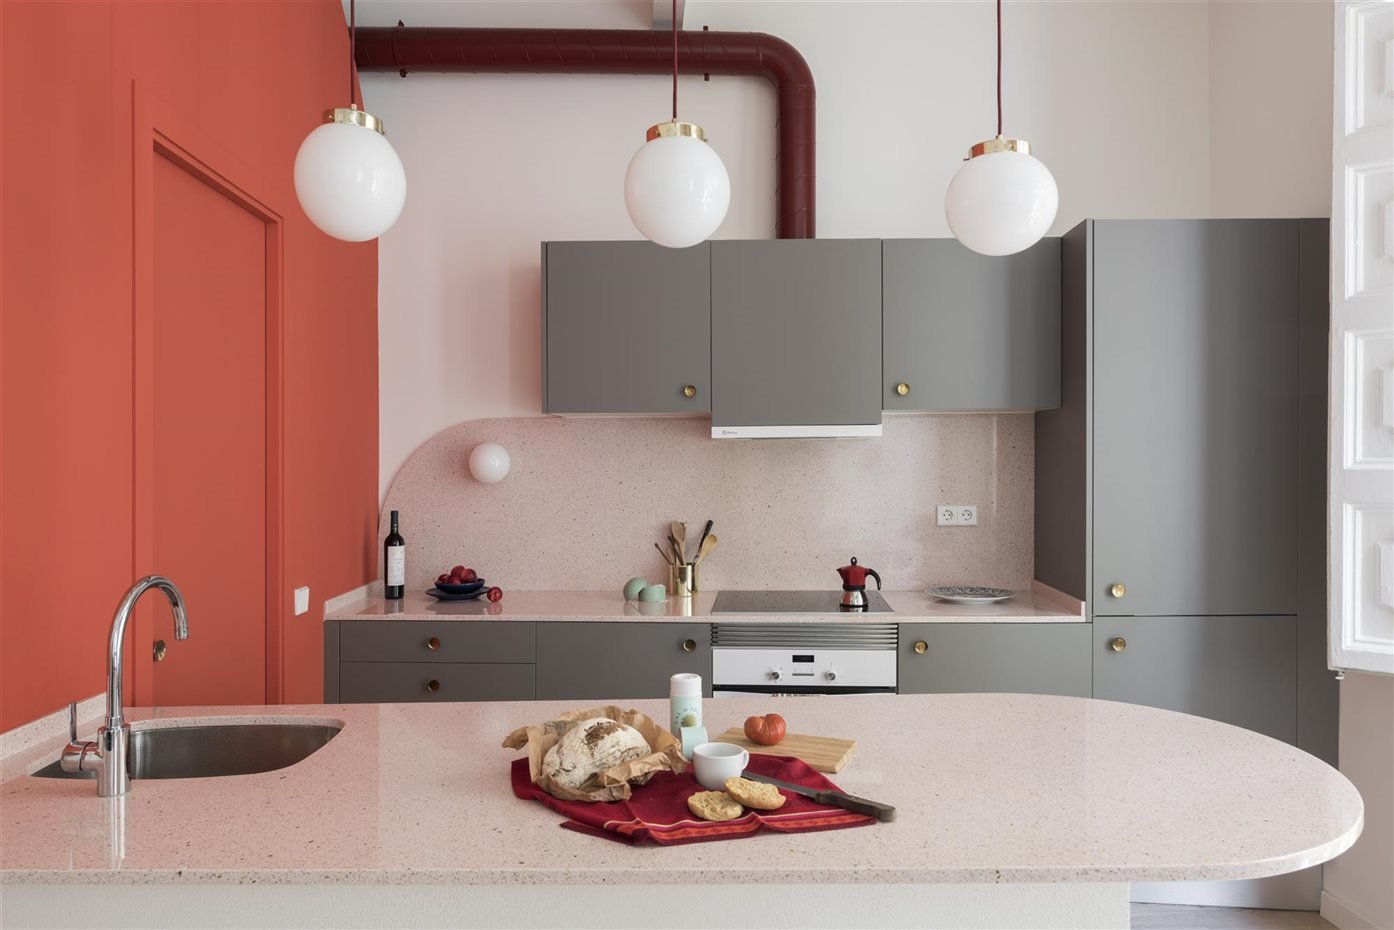 Cocina con muebles de color gris y coral de estilo industrial